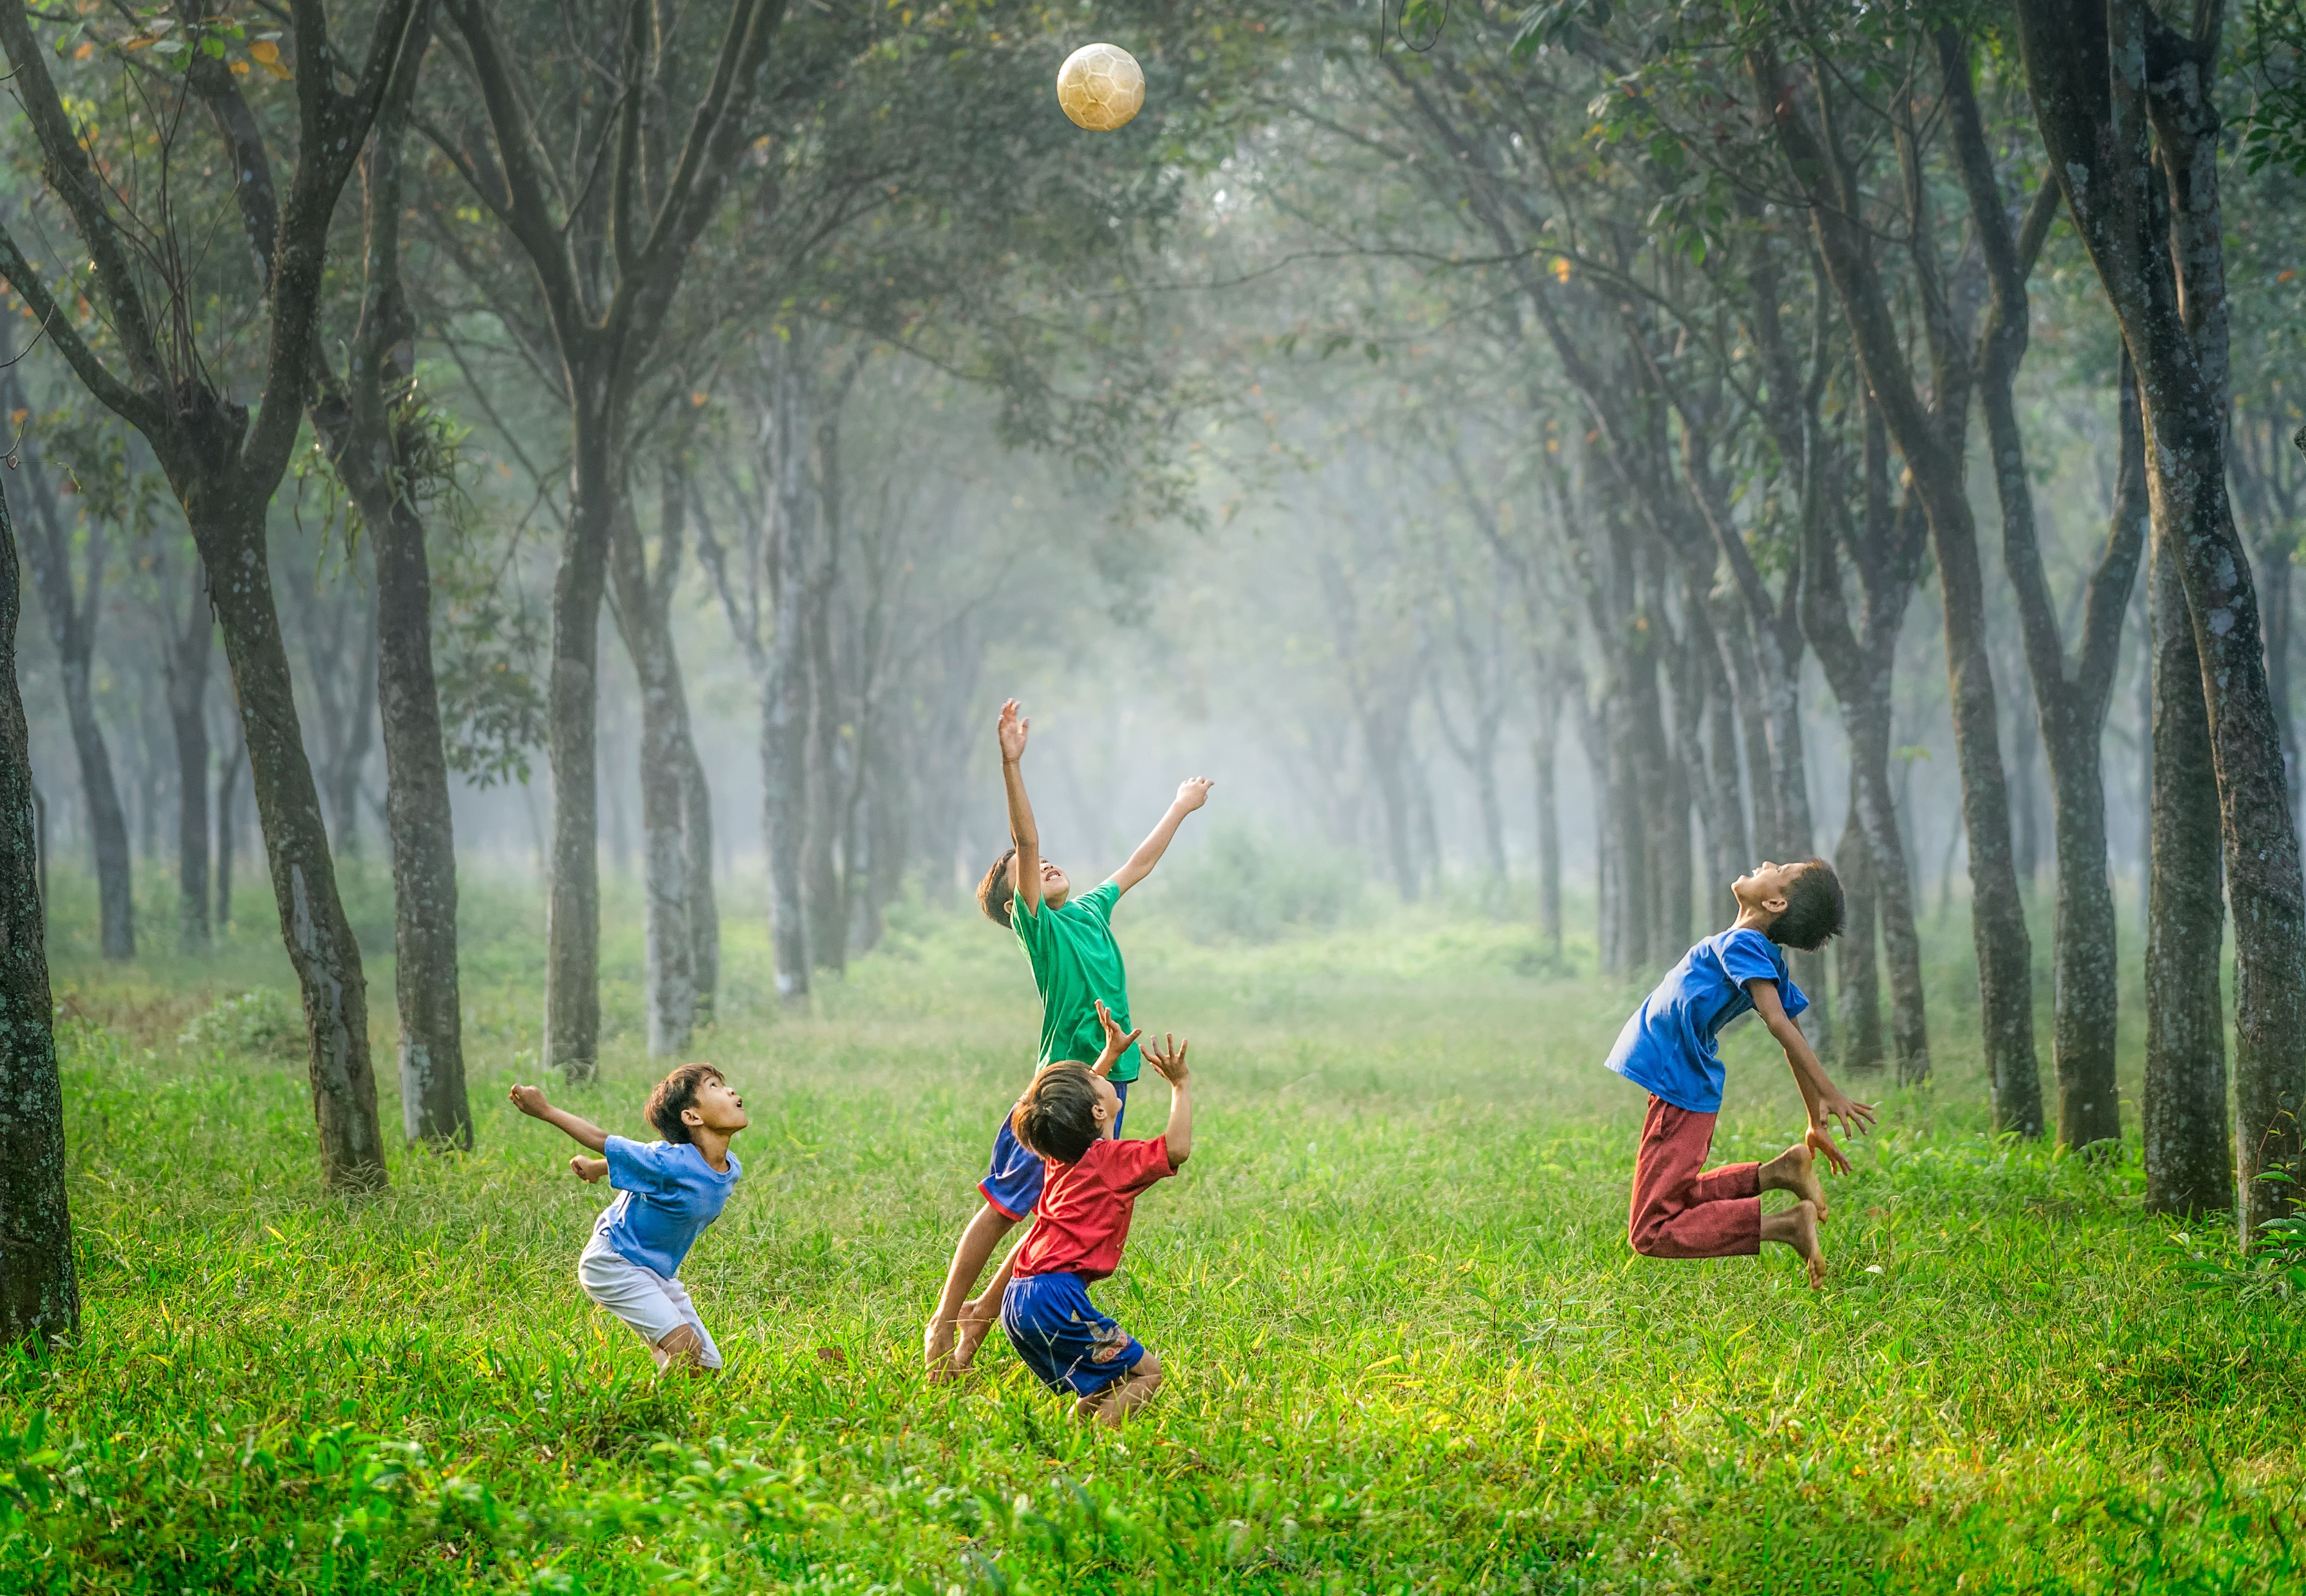 Kinder spielen im Wald mit einem Ball